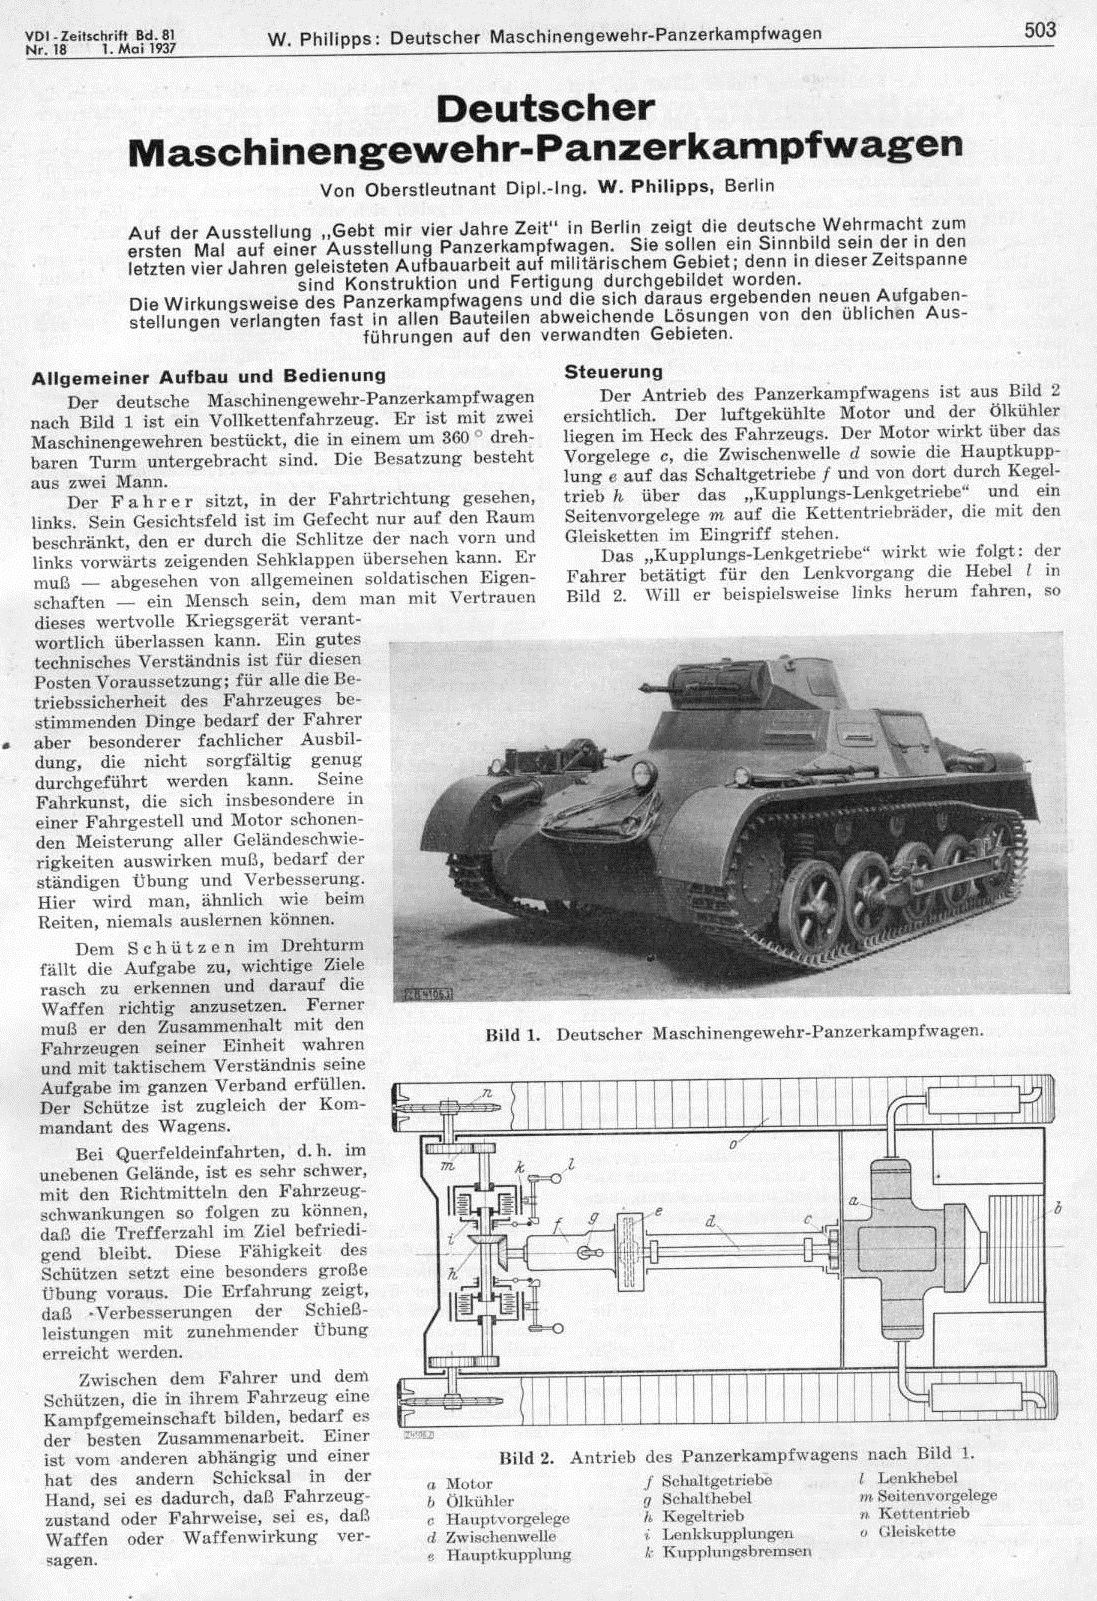 Maschinengewehr-Panzerwagen -1937-001